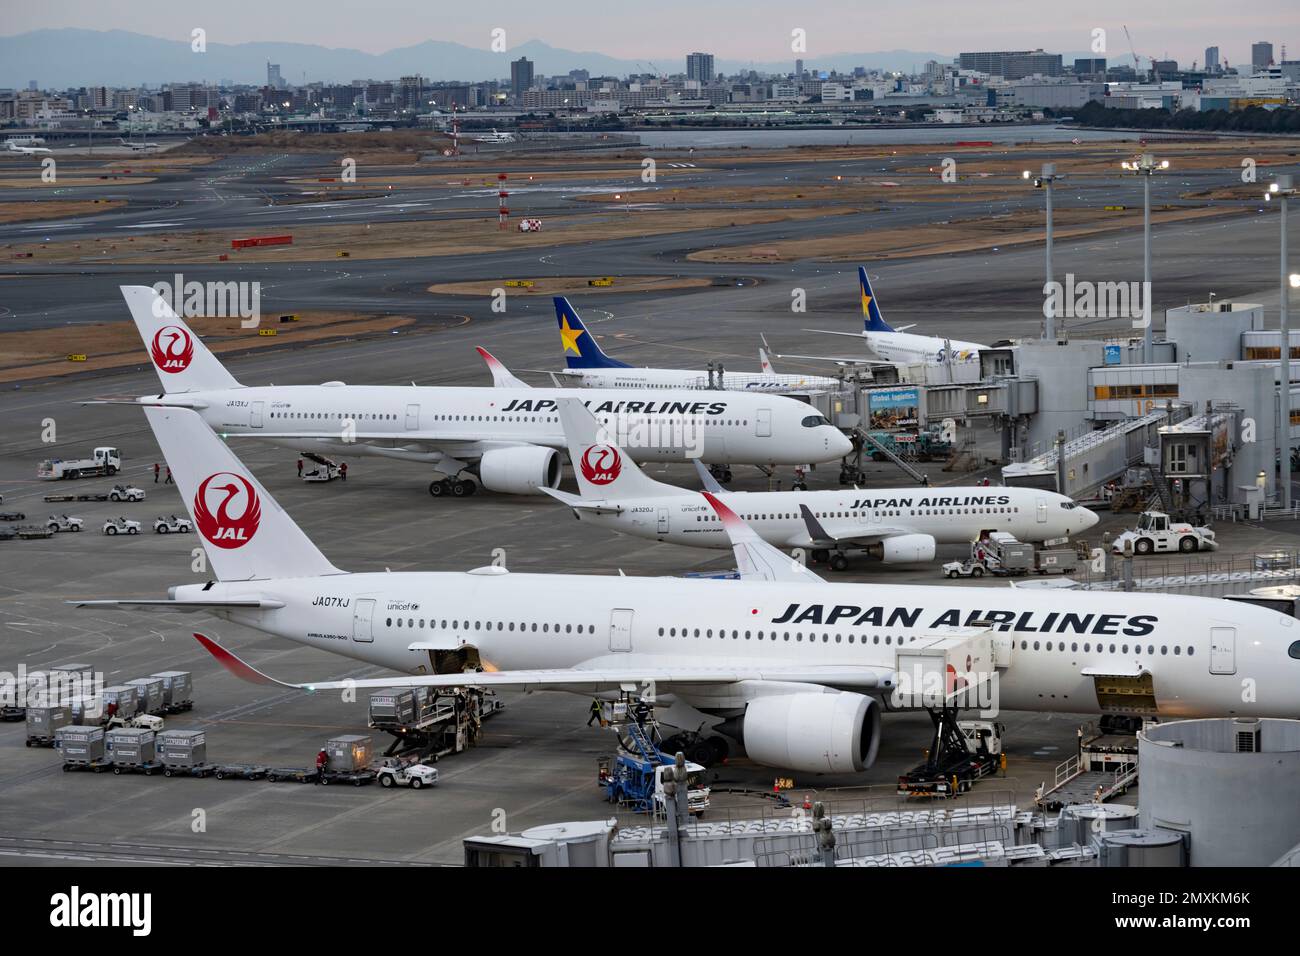 Tokyo, Japon. 2nd févr. 2023. Les Boeing d'apas Airlines aux portes du terminal 1 de Haneda.Japan Airlines (JAL), connue en japonais sous le nom de Nippon Yusen Kabushiki Kaisha (æ-¥æœ-éƒµèˆ¹æ ªå¼ä¼šç¤¾), est une compagnie aérienne importante basée à Tokyo, au Japon et membre de l'alliance oneworld. Elle exploite des vols internationaux et nationaux vers plus de 40 destinations dans le monde entier. JAL est l'une des compagnies aériennes les plus importantes et les plus respectées d'Asie, offrant un haut niveau de service et de confort à ses passagers et est connue pour son logo emblématique de grue rouge. JAL a récemment enregistré un profit, revenant au noir après la COVID-19 Banque D'Images